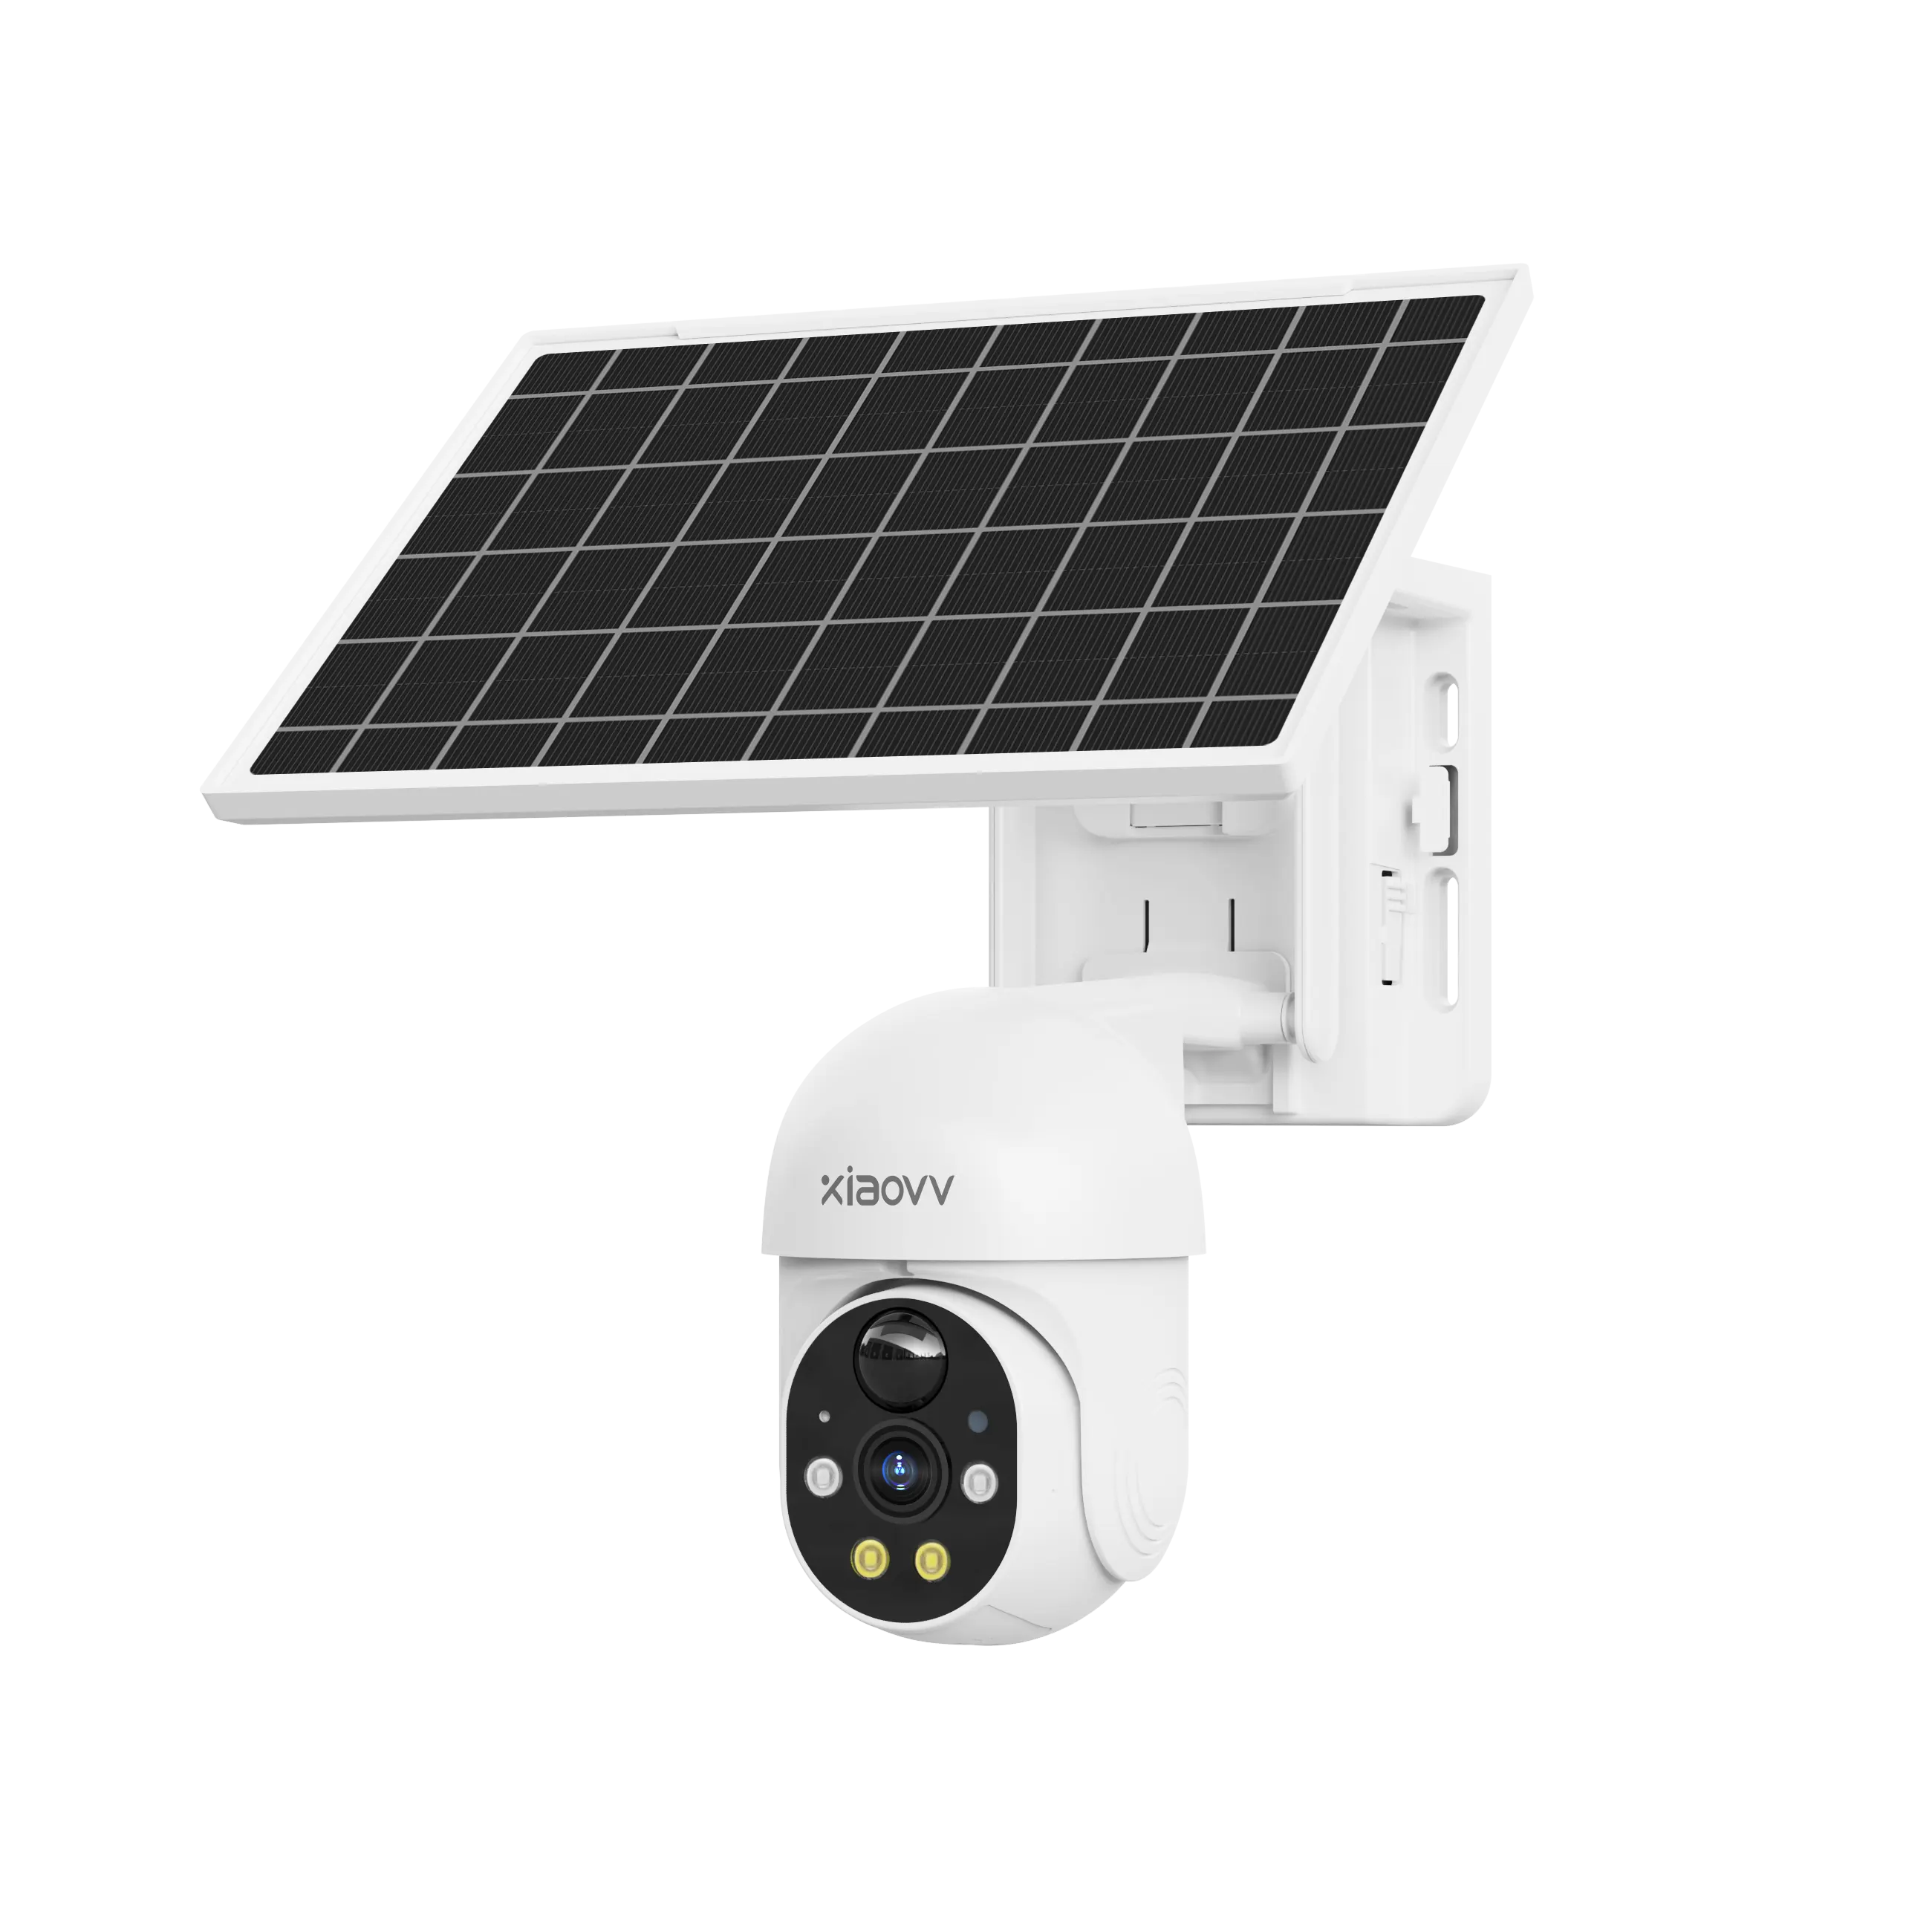 Xiaovv P6 Pro telecamera solare PIR rilevamento della forma umana telecamera di sicurezza WiFi Wireless esterna a basso consumo di energia della batteria Auto